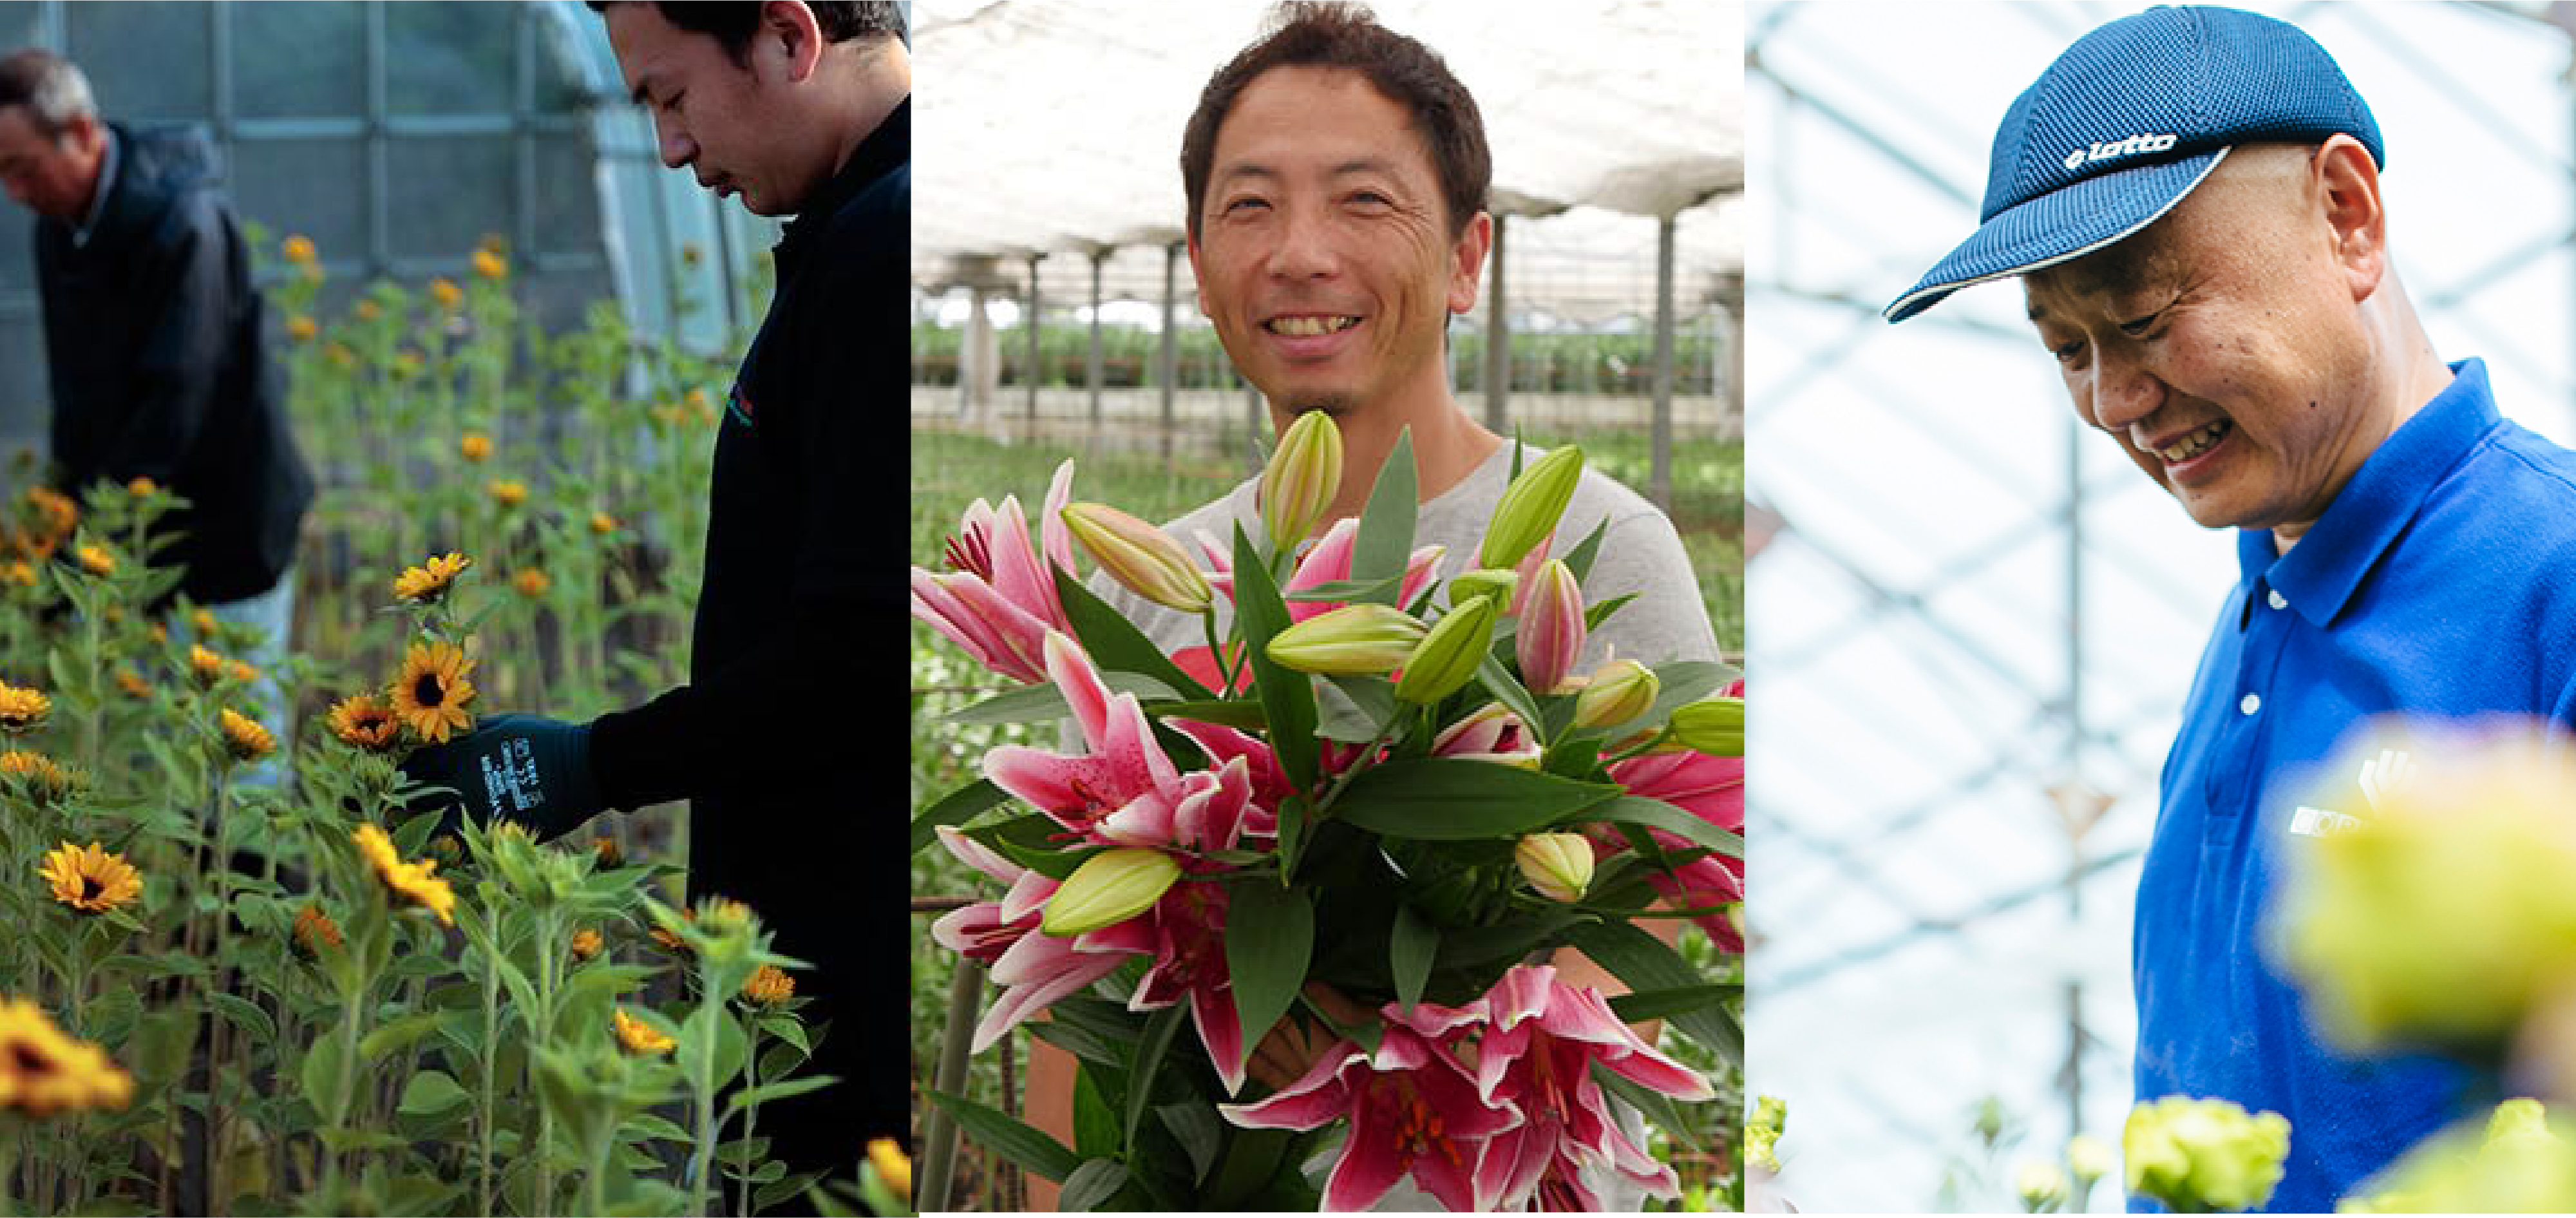 6月は「環境月間」/ 環境に配慮した花を栽培する生産者のフェアを開催します